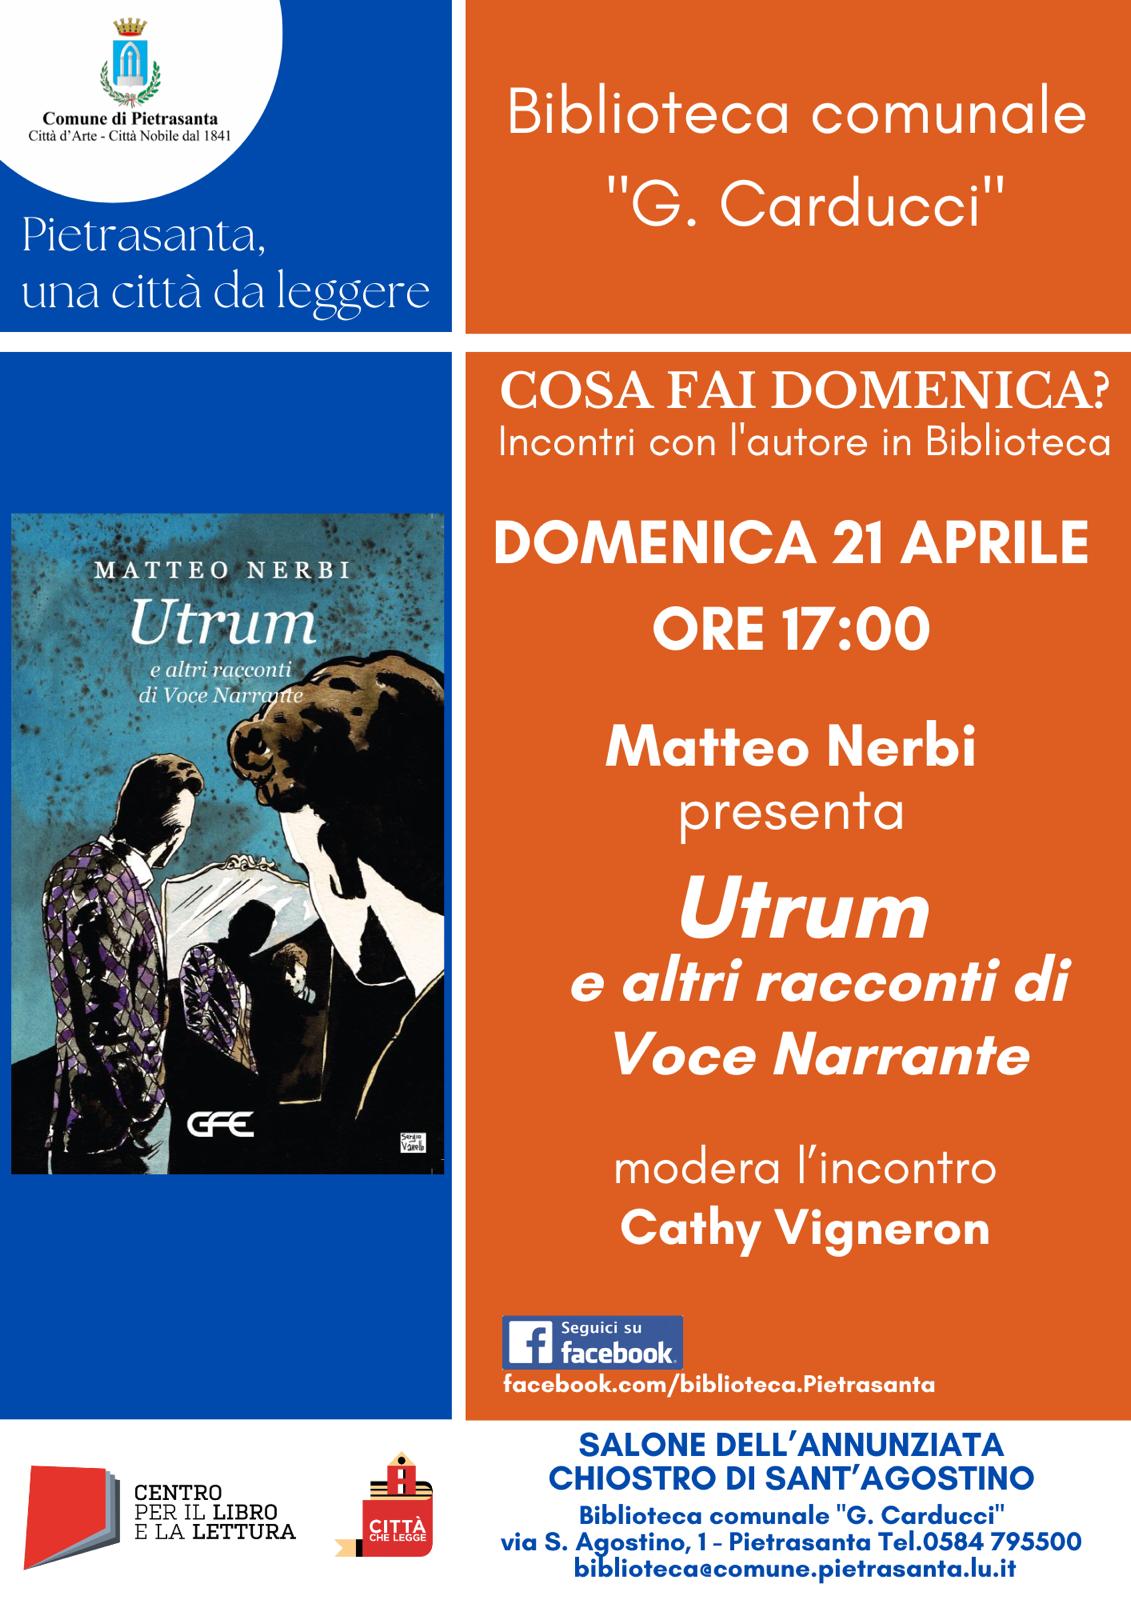 L’autore toscano Matteo Nerbi il 21 aprile a Pietrasanta per presentare “Utrum e altri racconti di Voce Narrante”